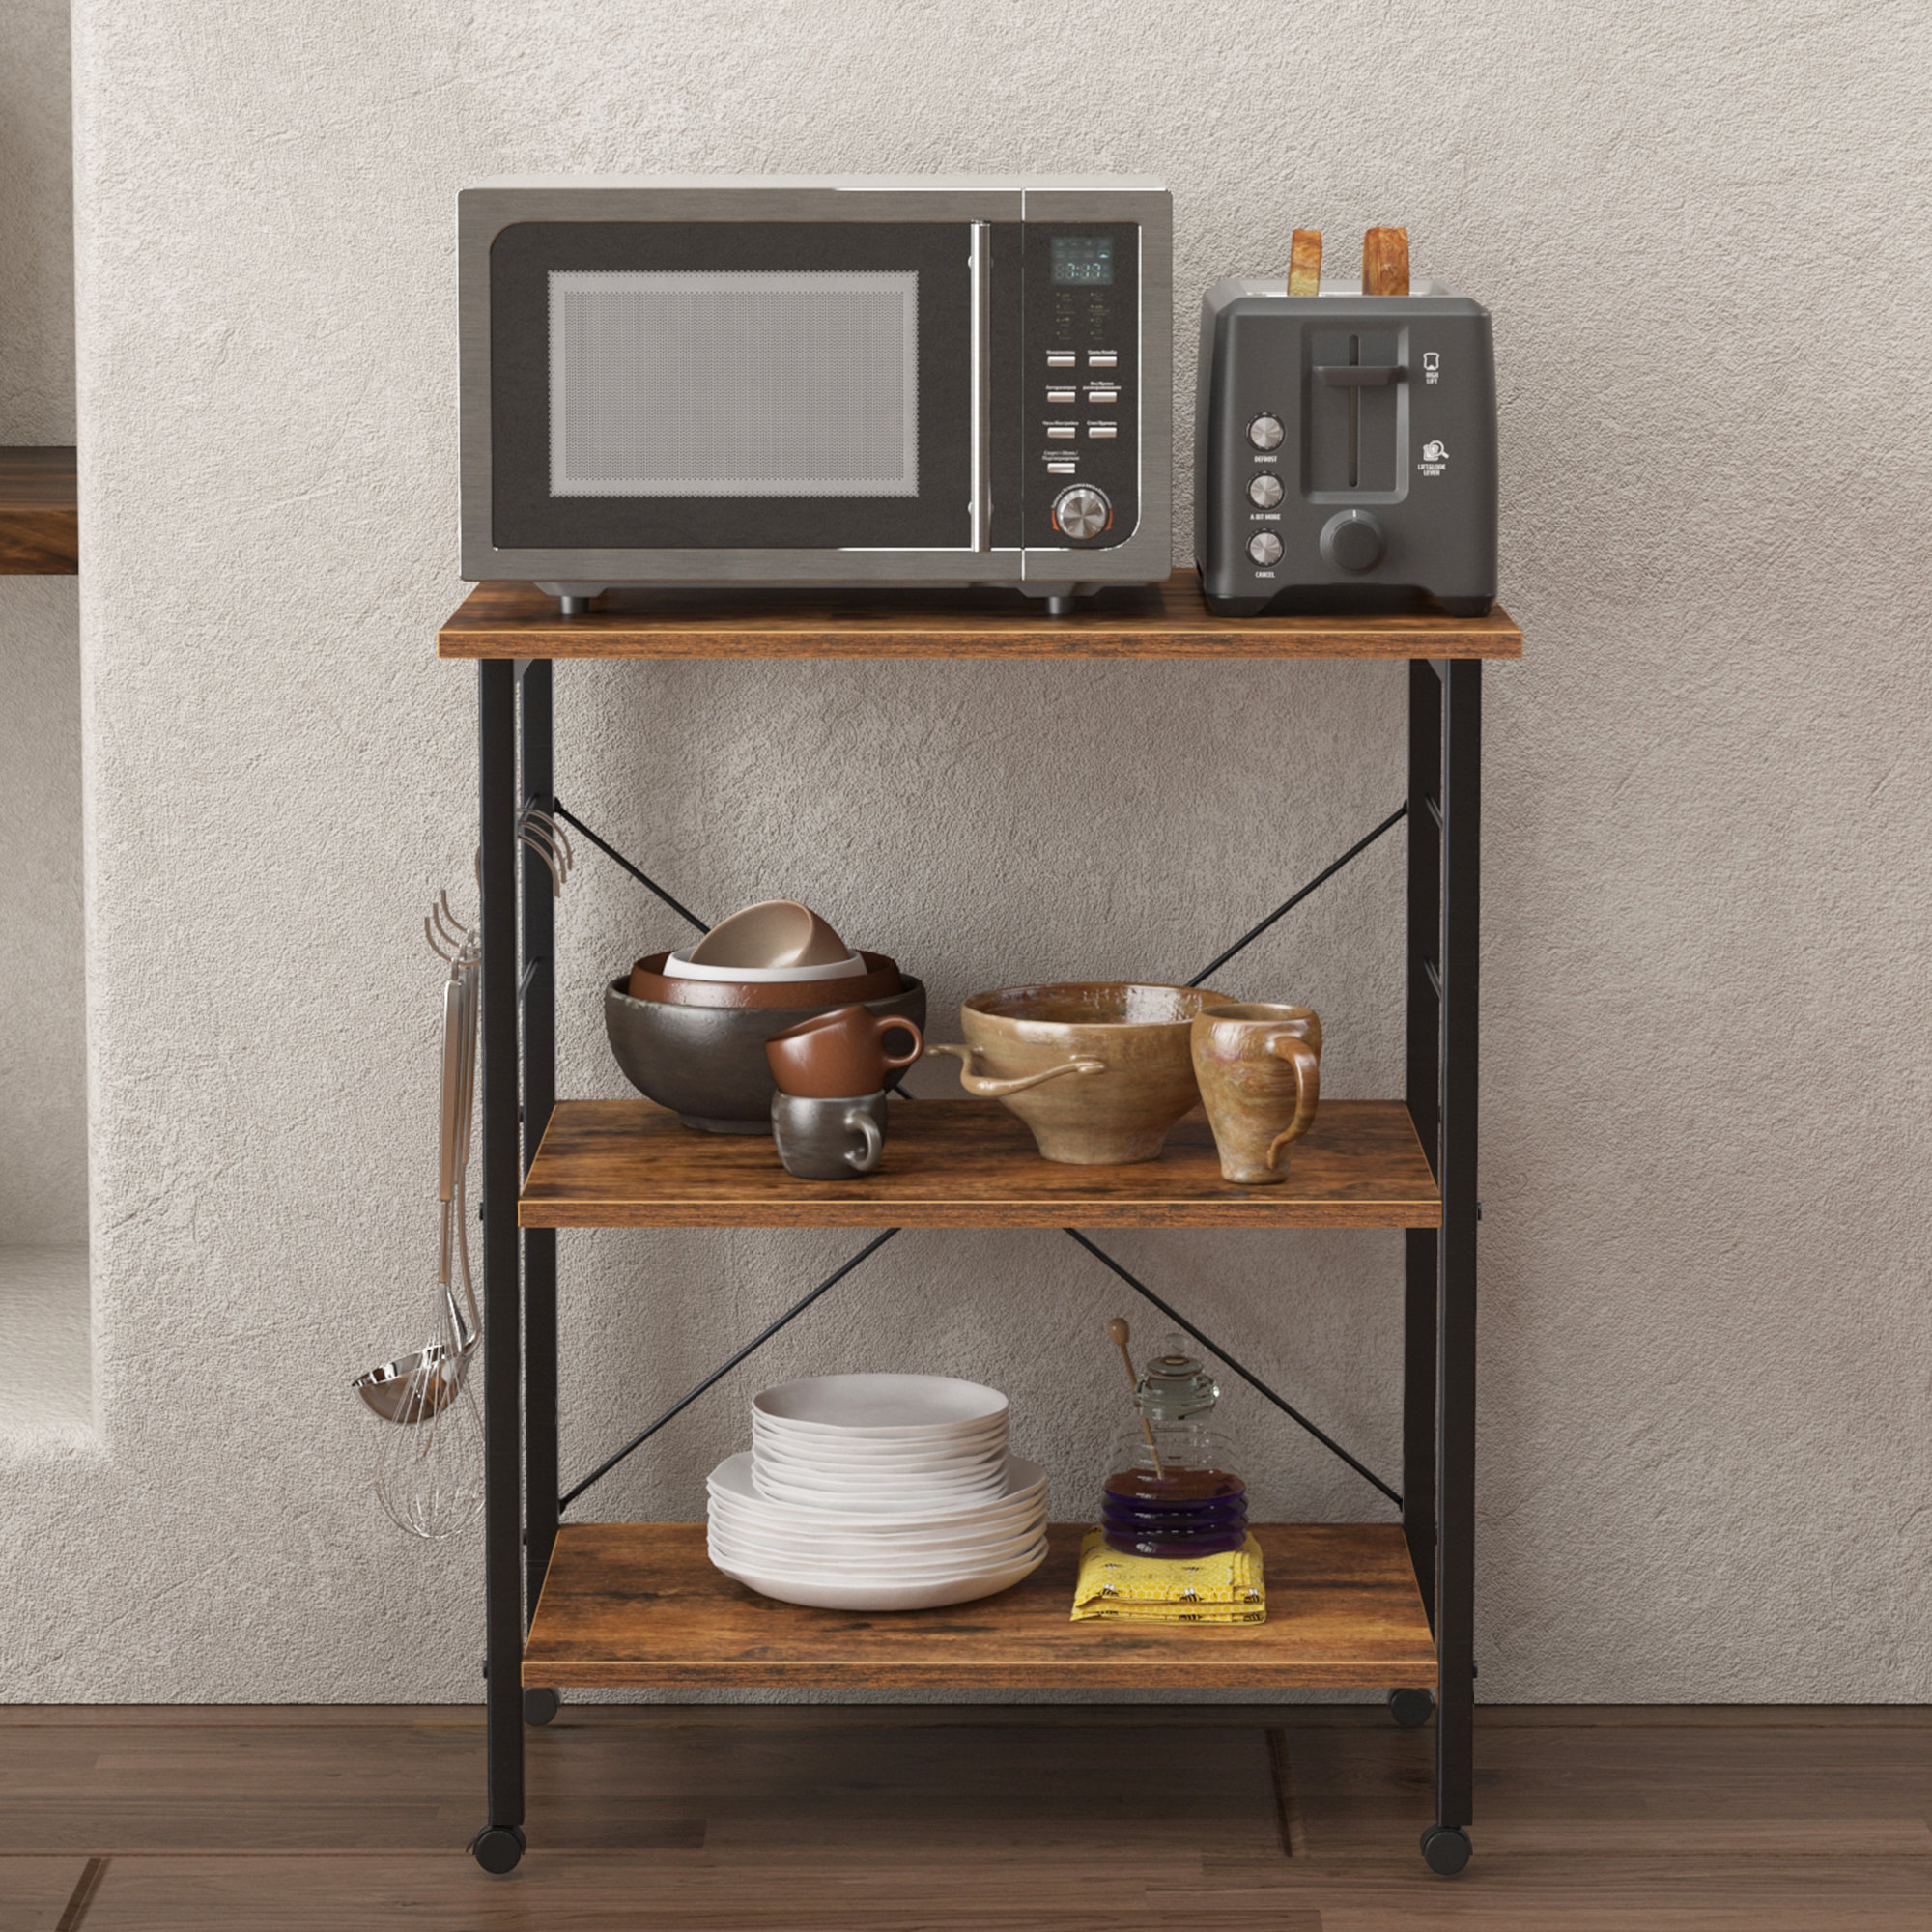 2/3 Tiers Wooden Microwave Storage Shelf Oven Stand Rack Cart Organizer  Kitchen